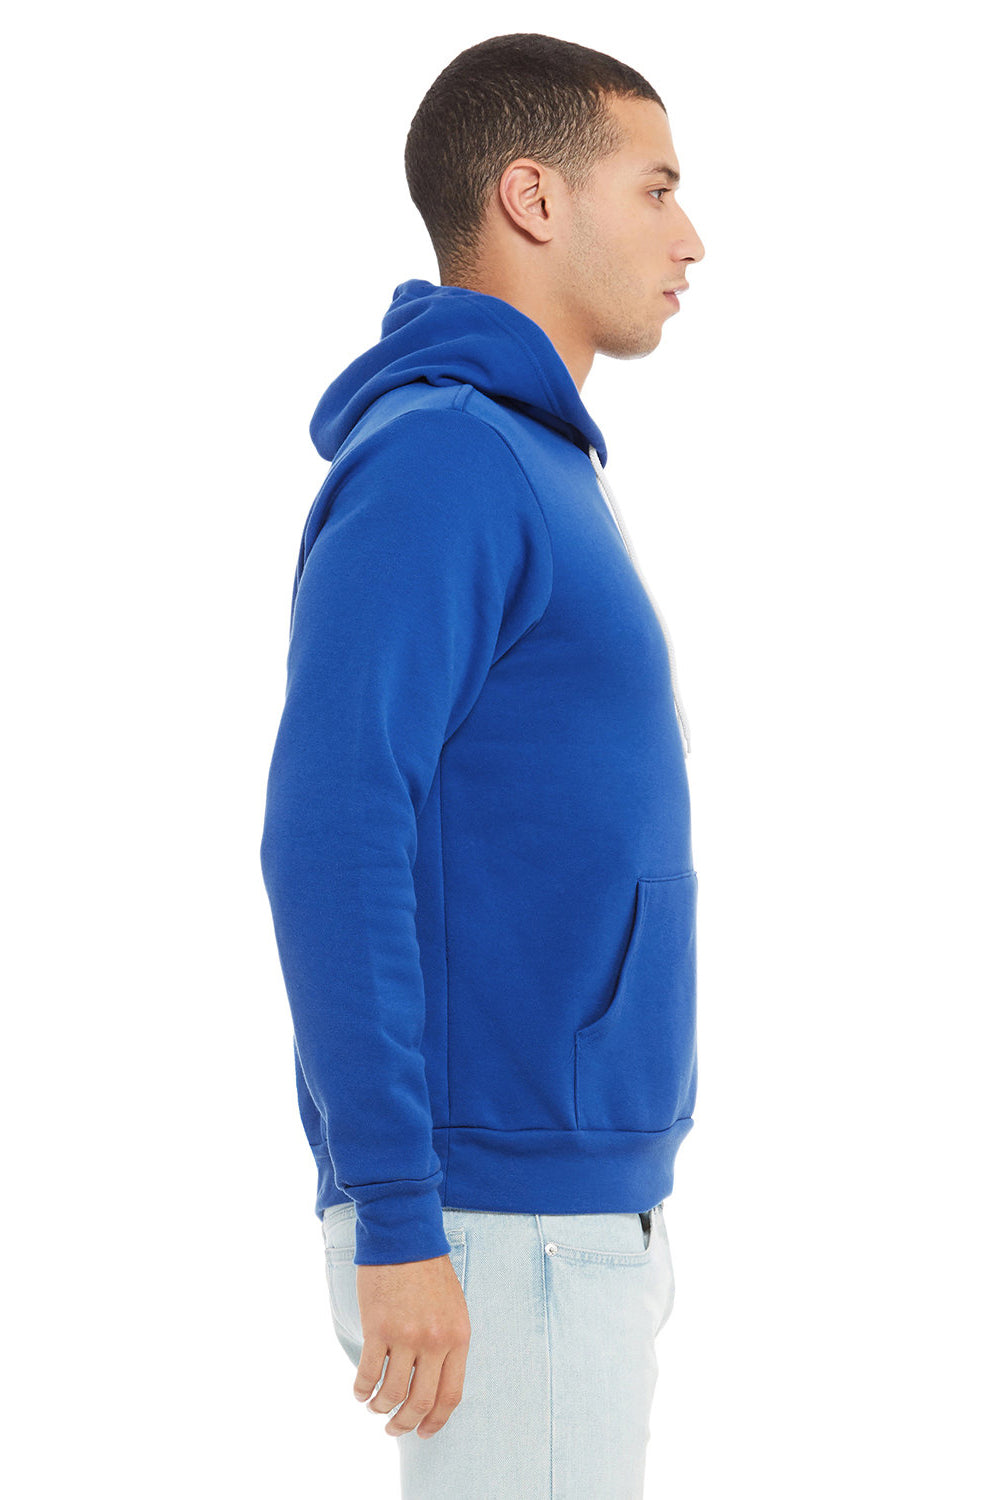 Bella + Canvas BC3719/3719 Mens Sponge Fleece Hooded Sweatshirt Hoodie True Royal Blue Model Side